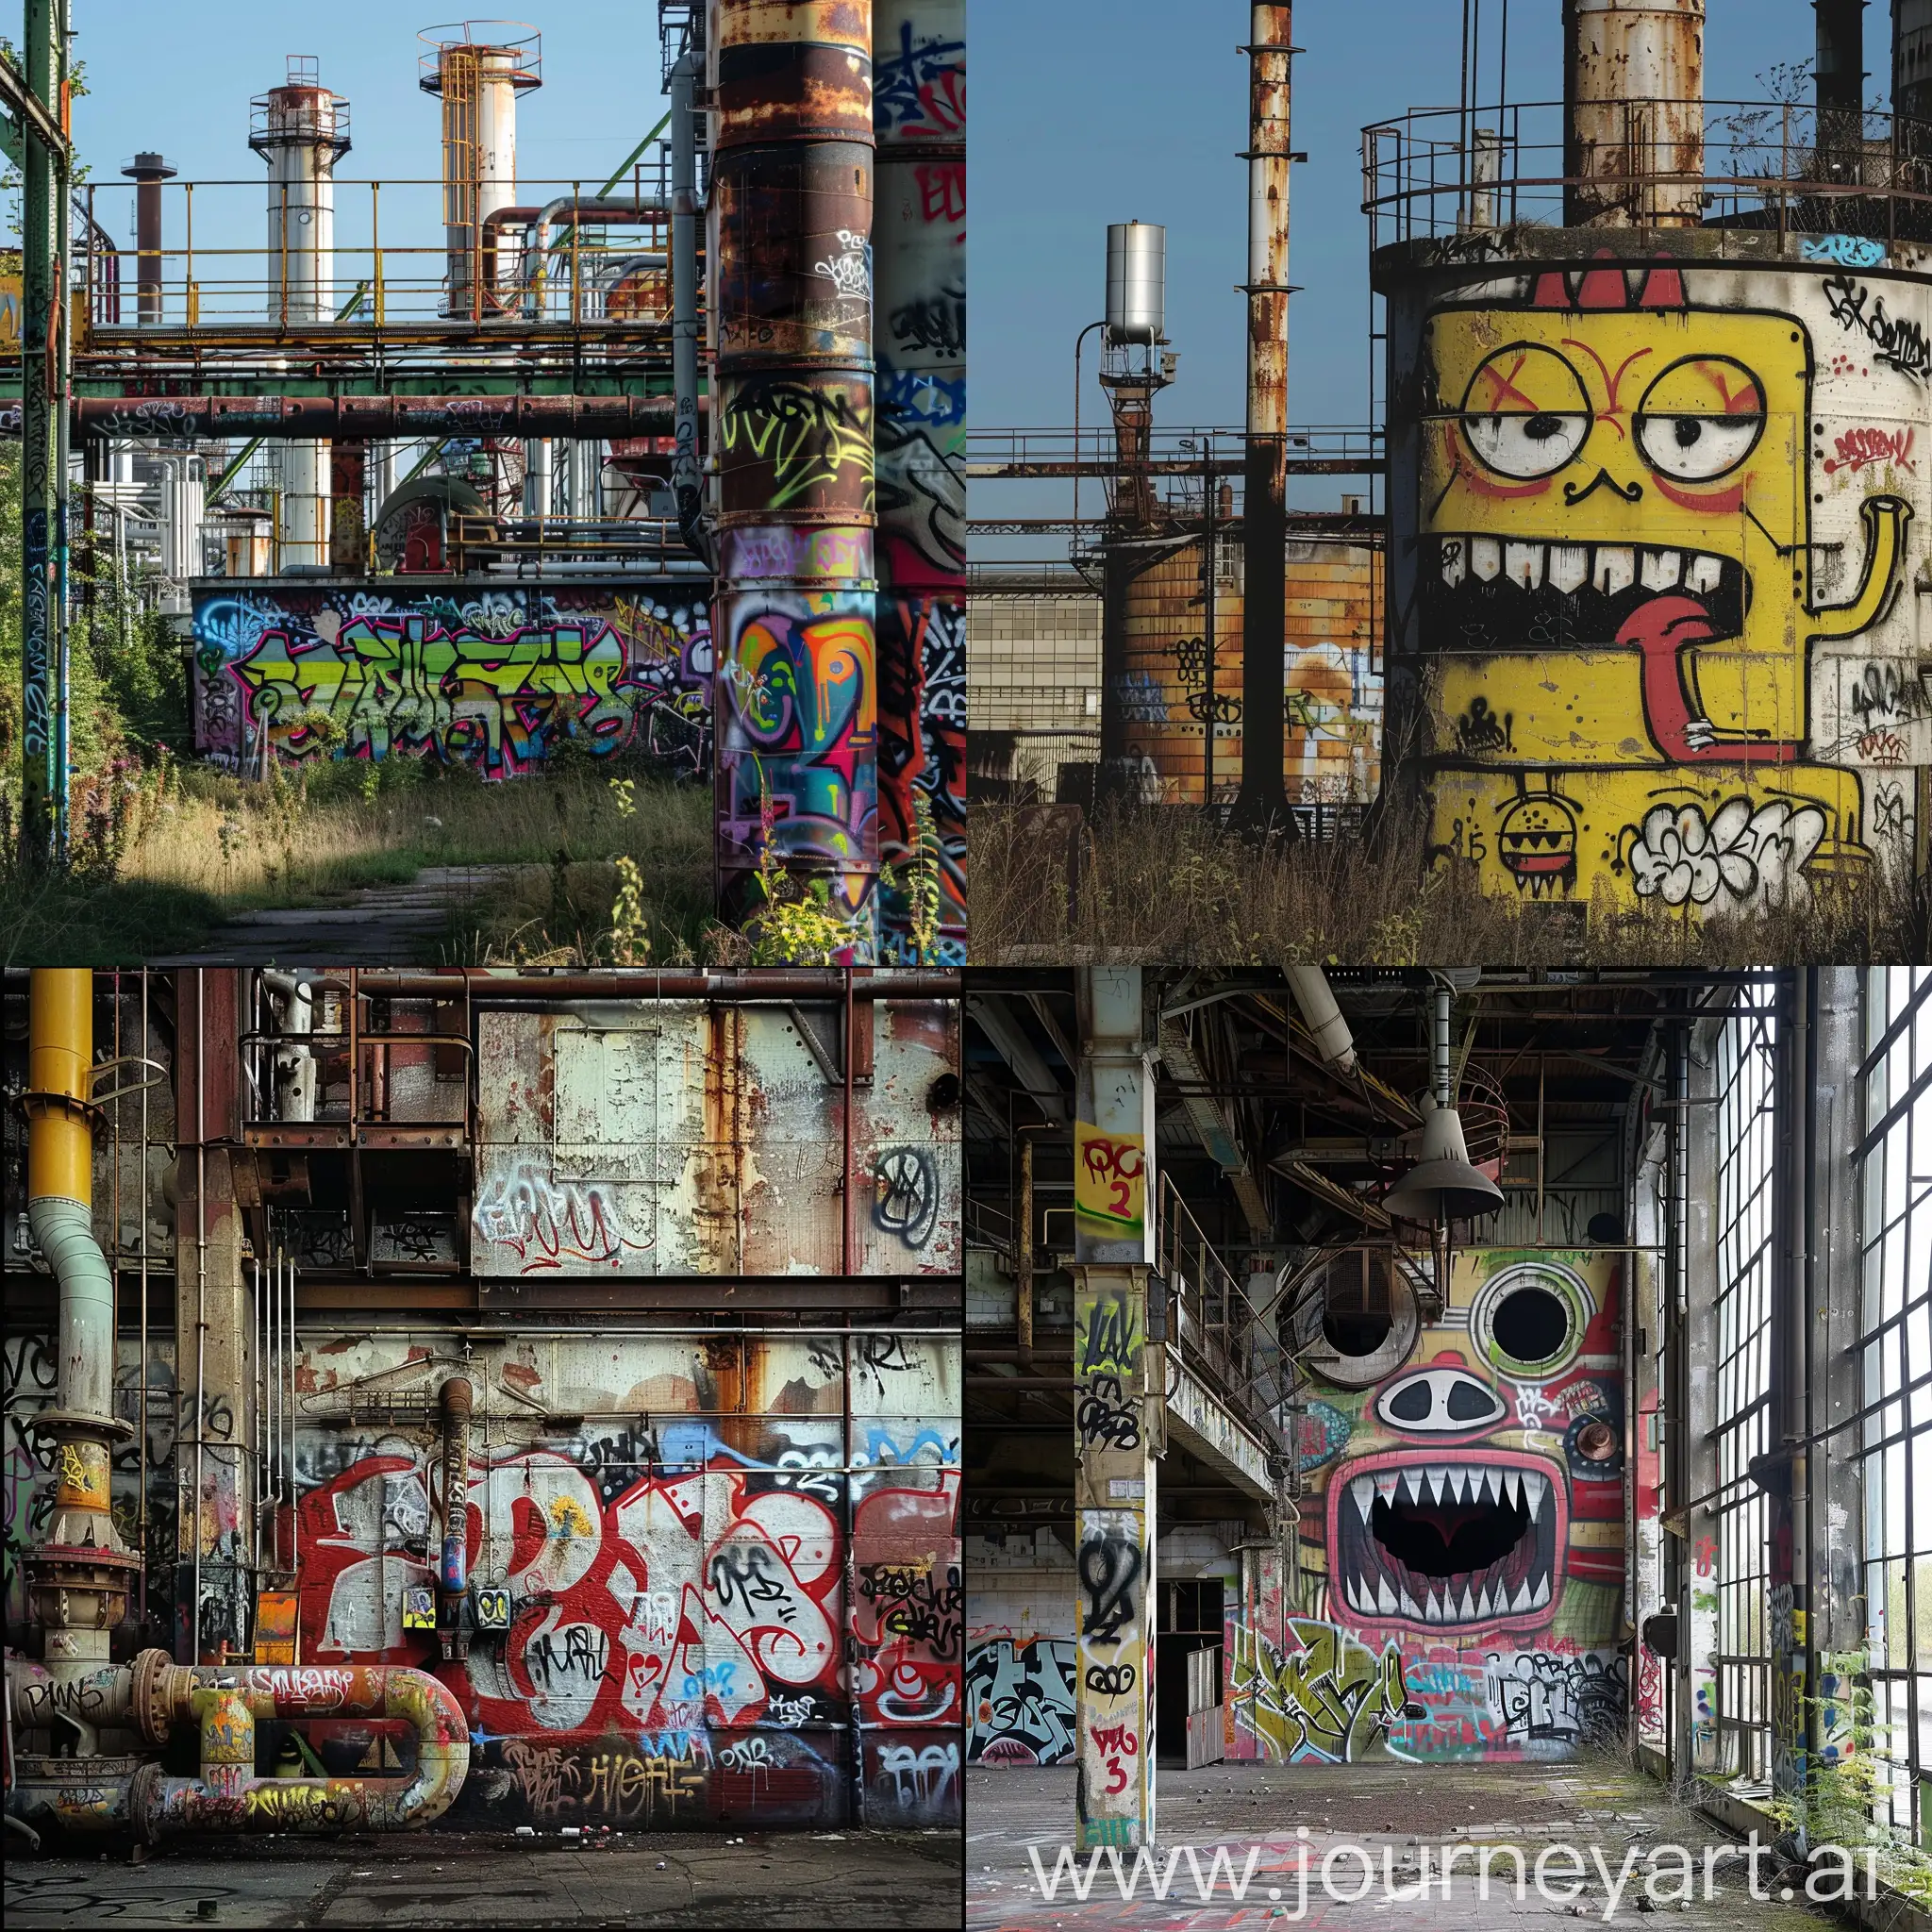 graffiti, industrial plants